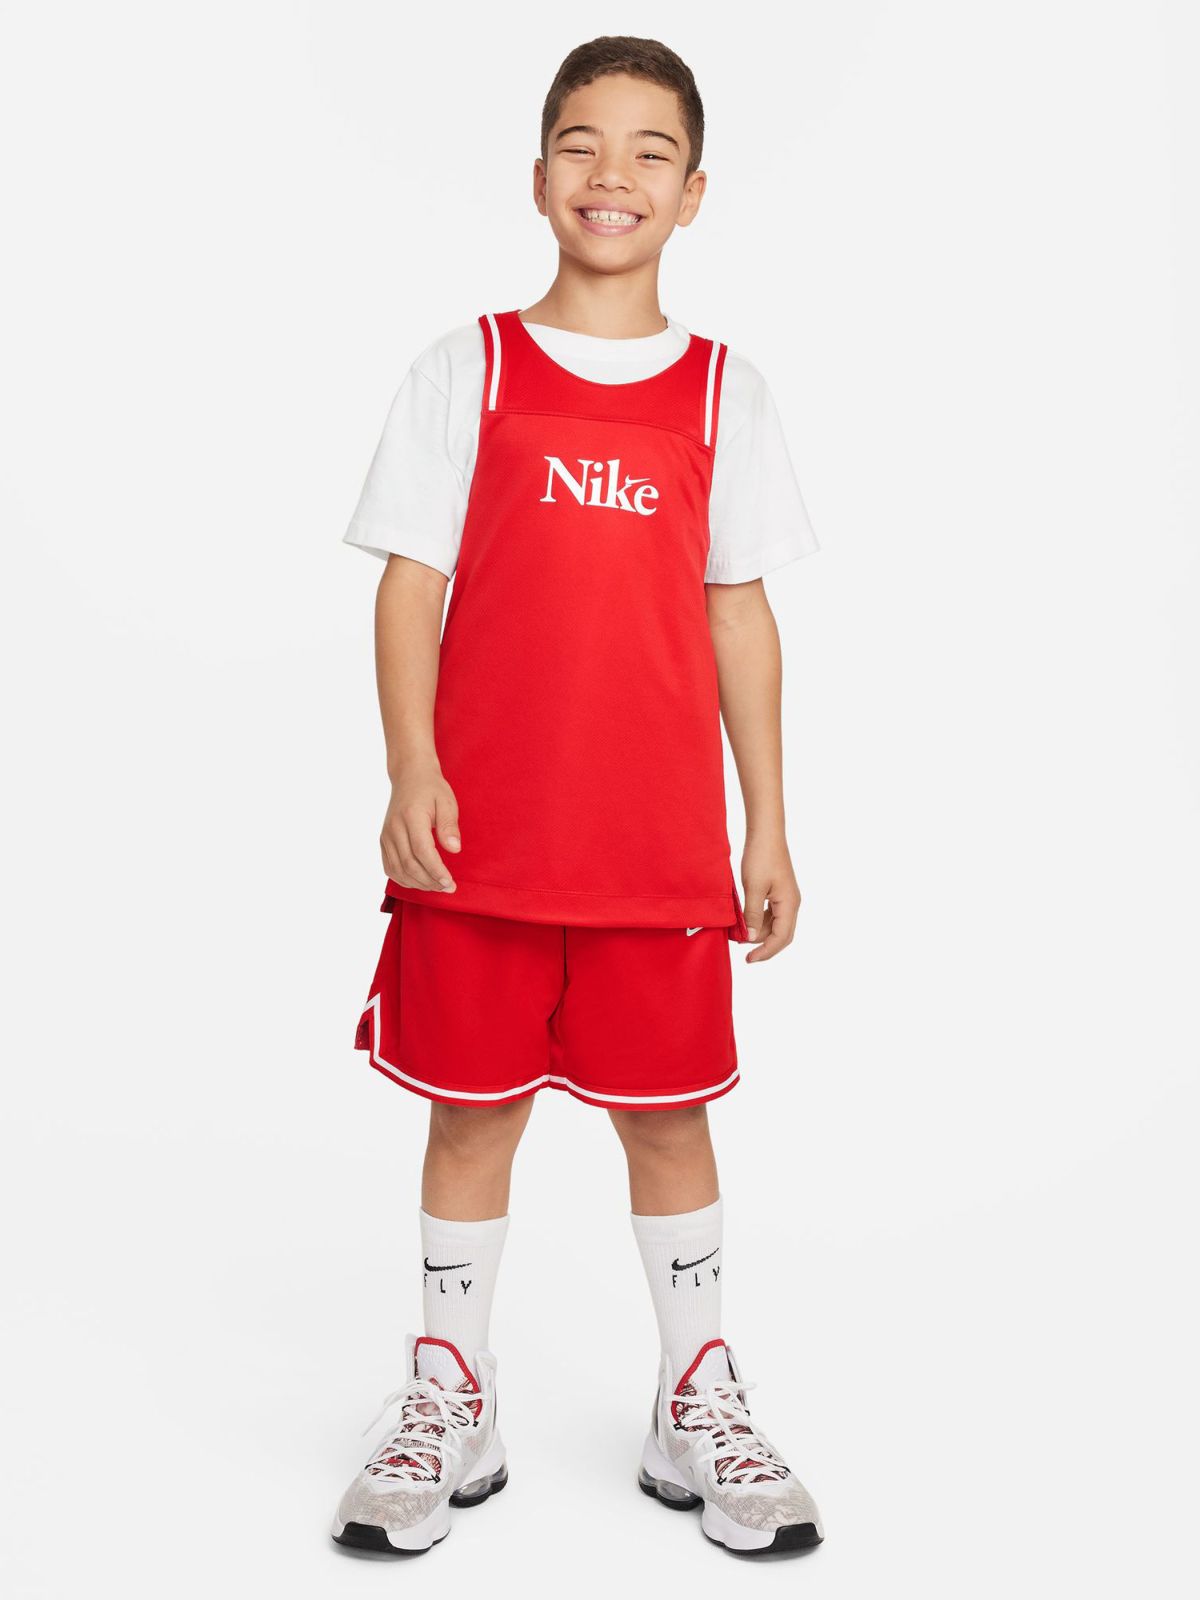  גופיית כדורסל דו צדדית Nike Culture of Basketball של NIKE